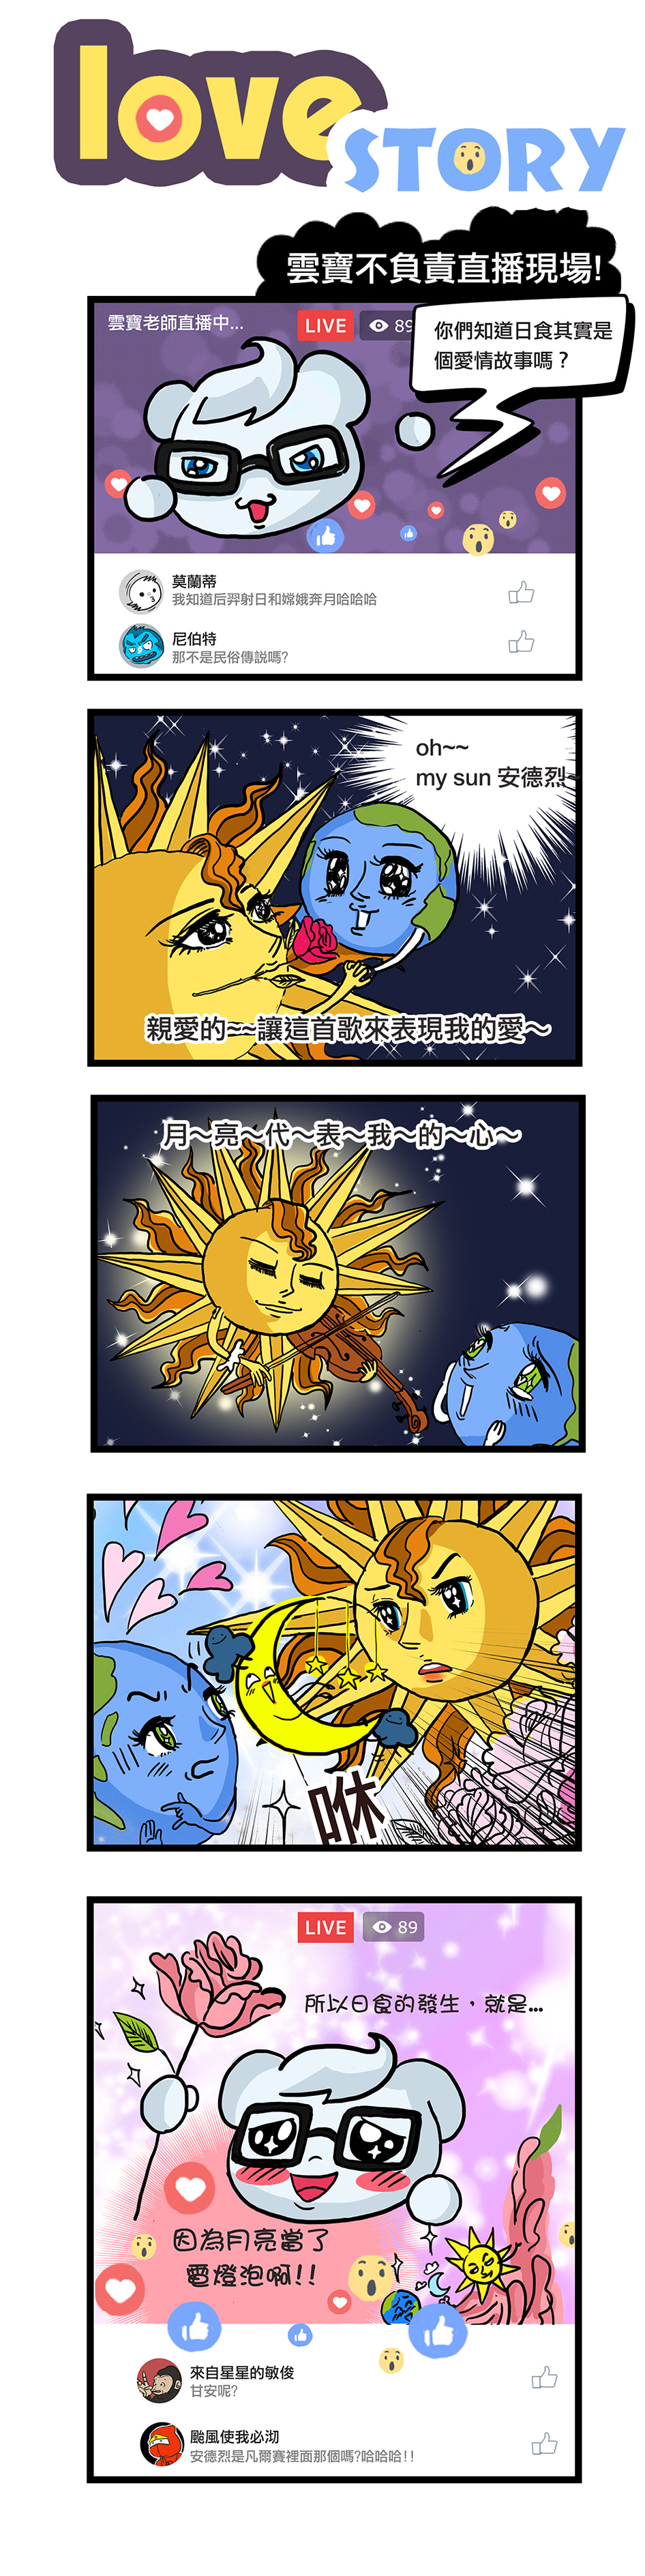 五格漫畫：love story。雲寶老師描述日食像極了愛情，因為在太陽和地球互訴情衷時，月亮當了兩人之間的電燈泡，才發生日食。